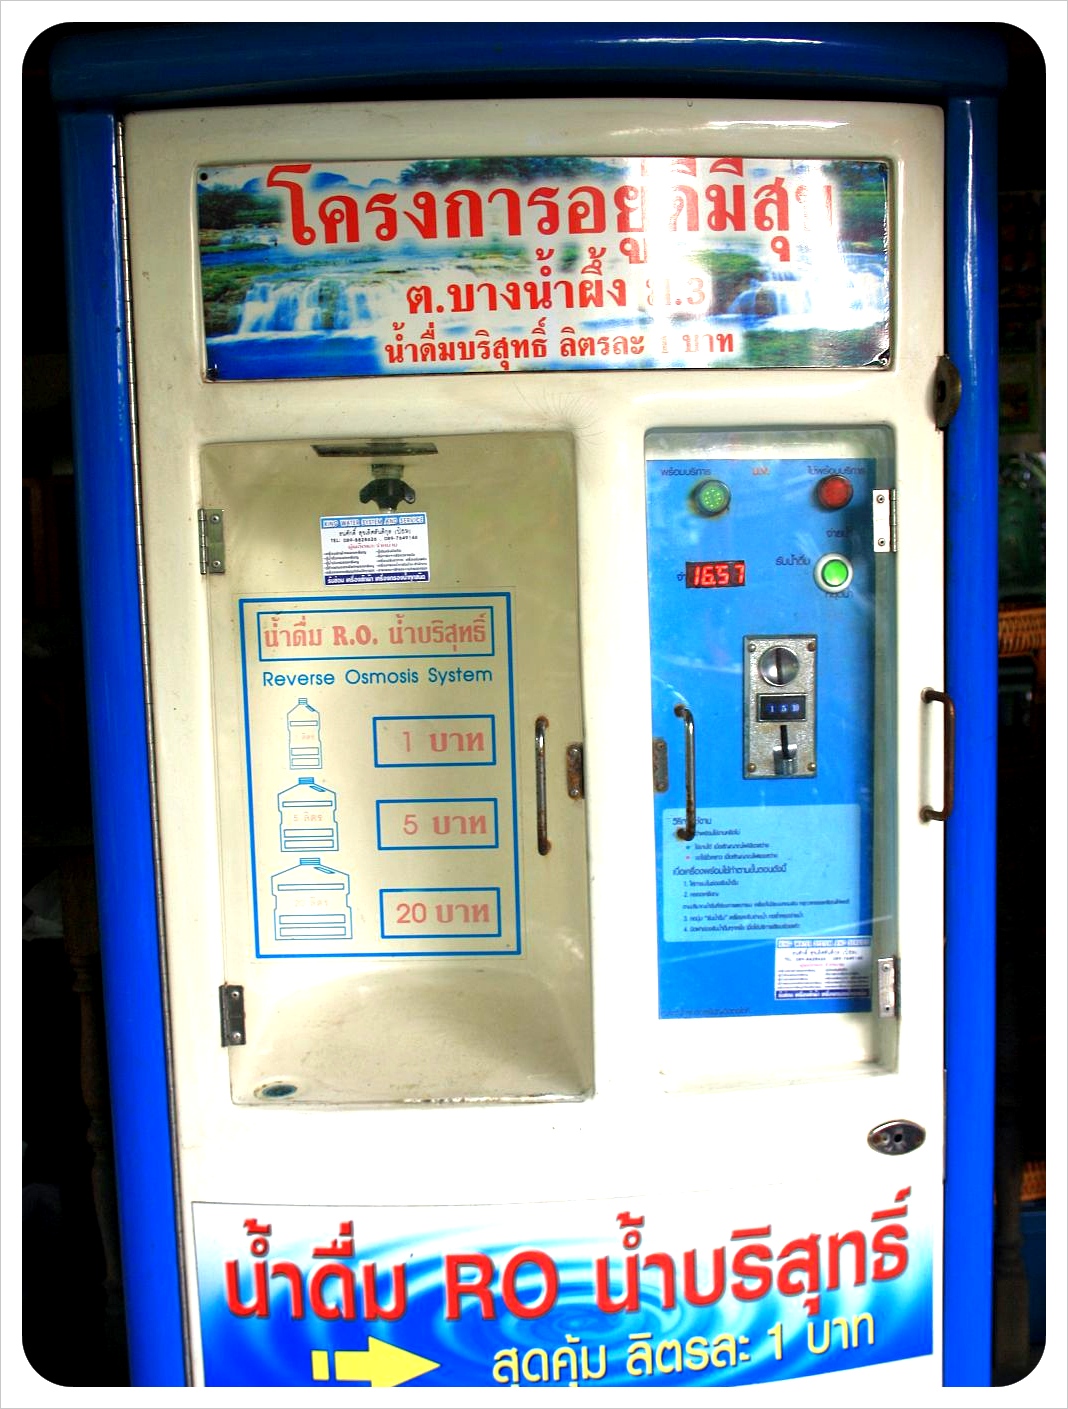 [Image: thailand-water-filter-machine.jpg]